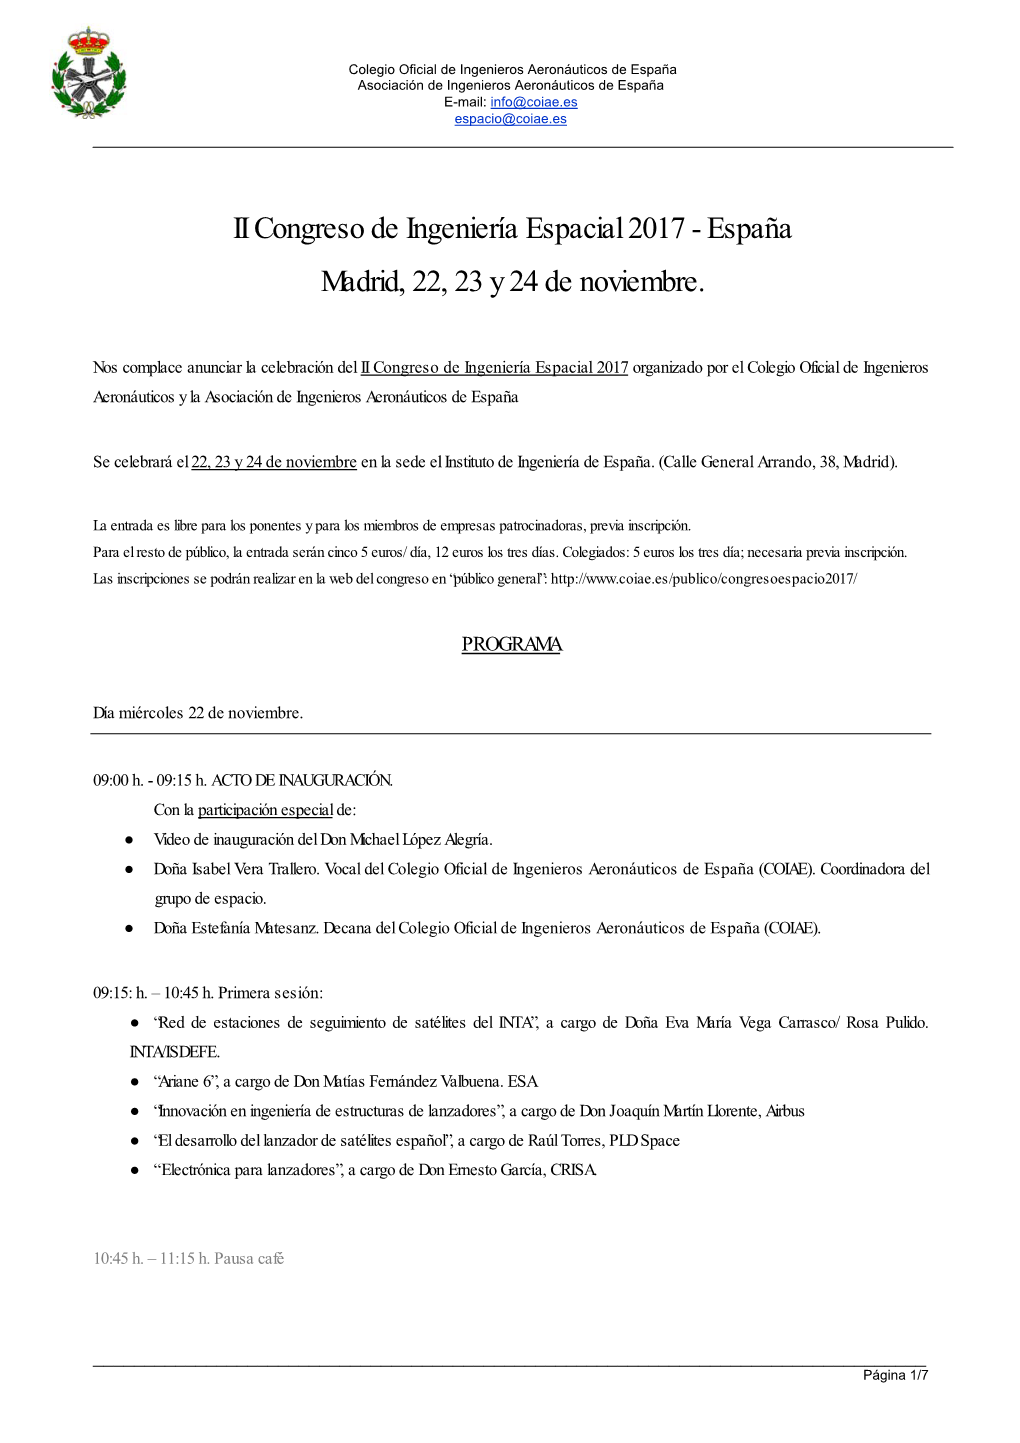 II Congreso De Ingeniería Espacial 2017 - España Madrid, 22, 23 Y 24 De Noviembre